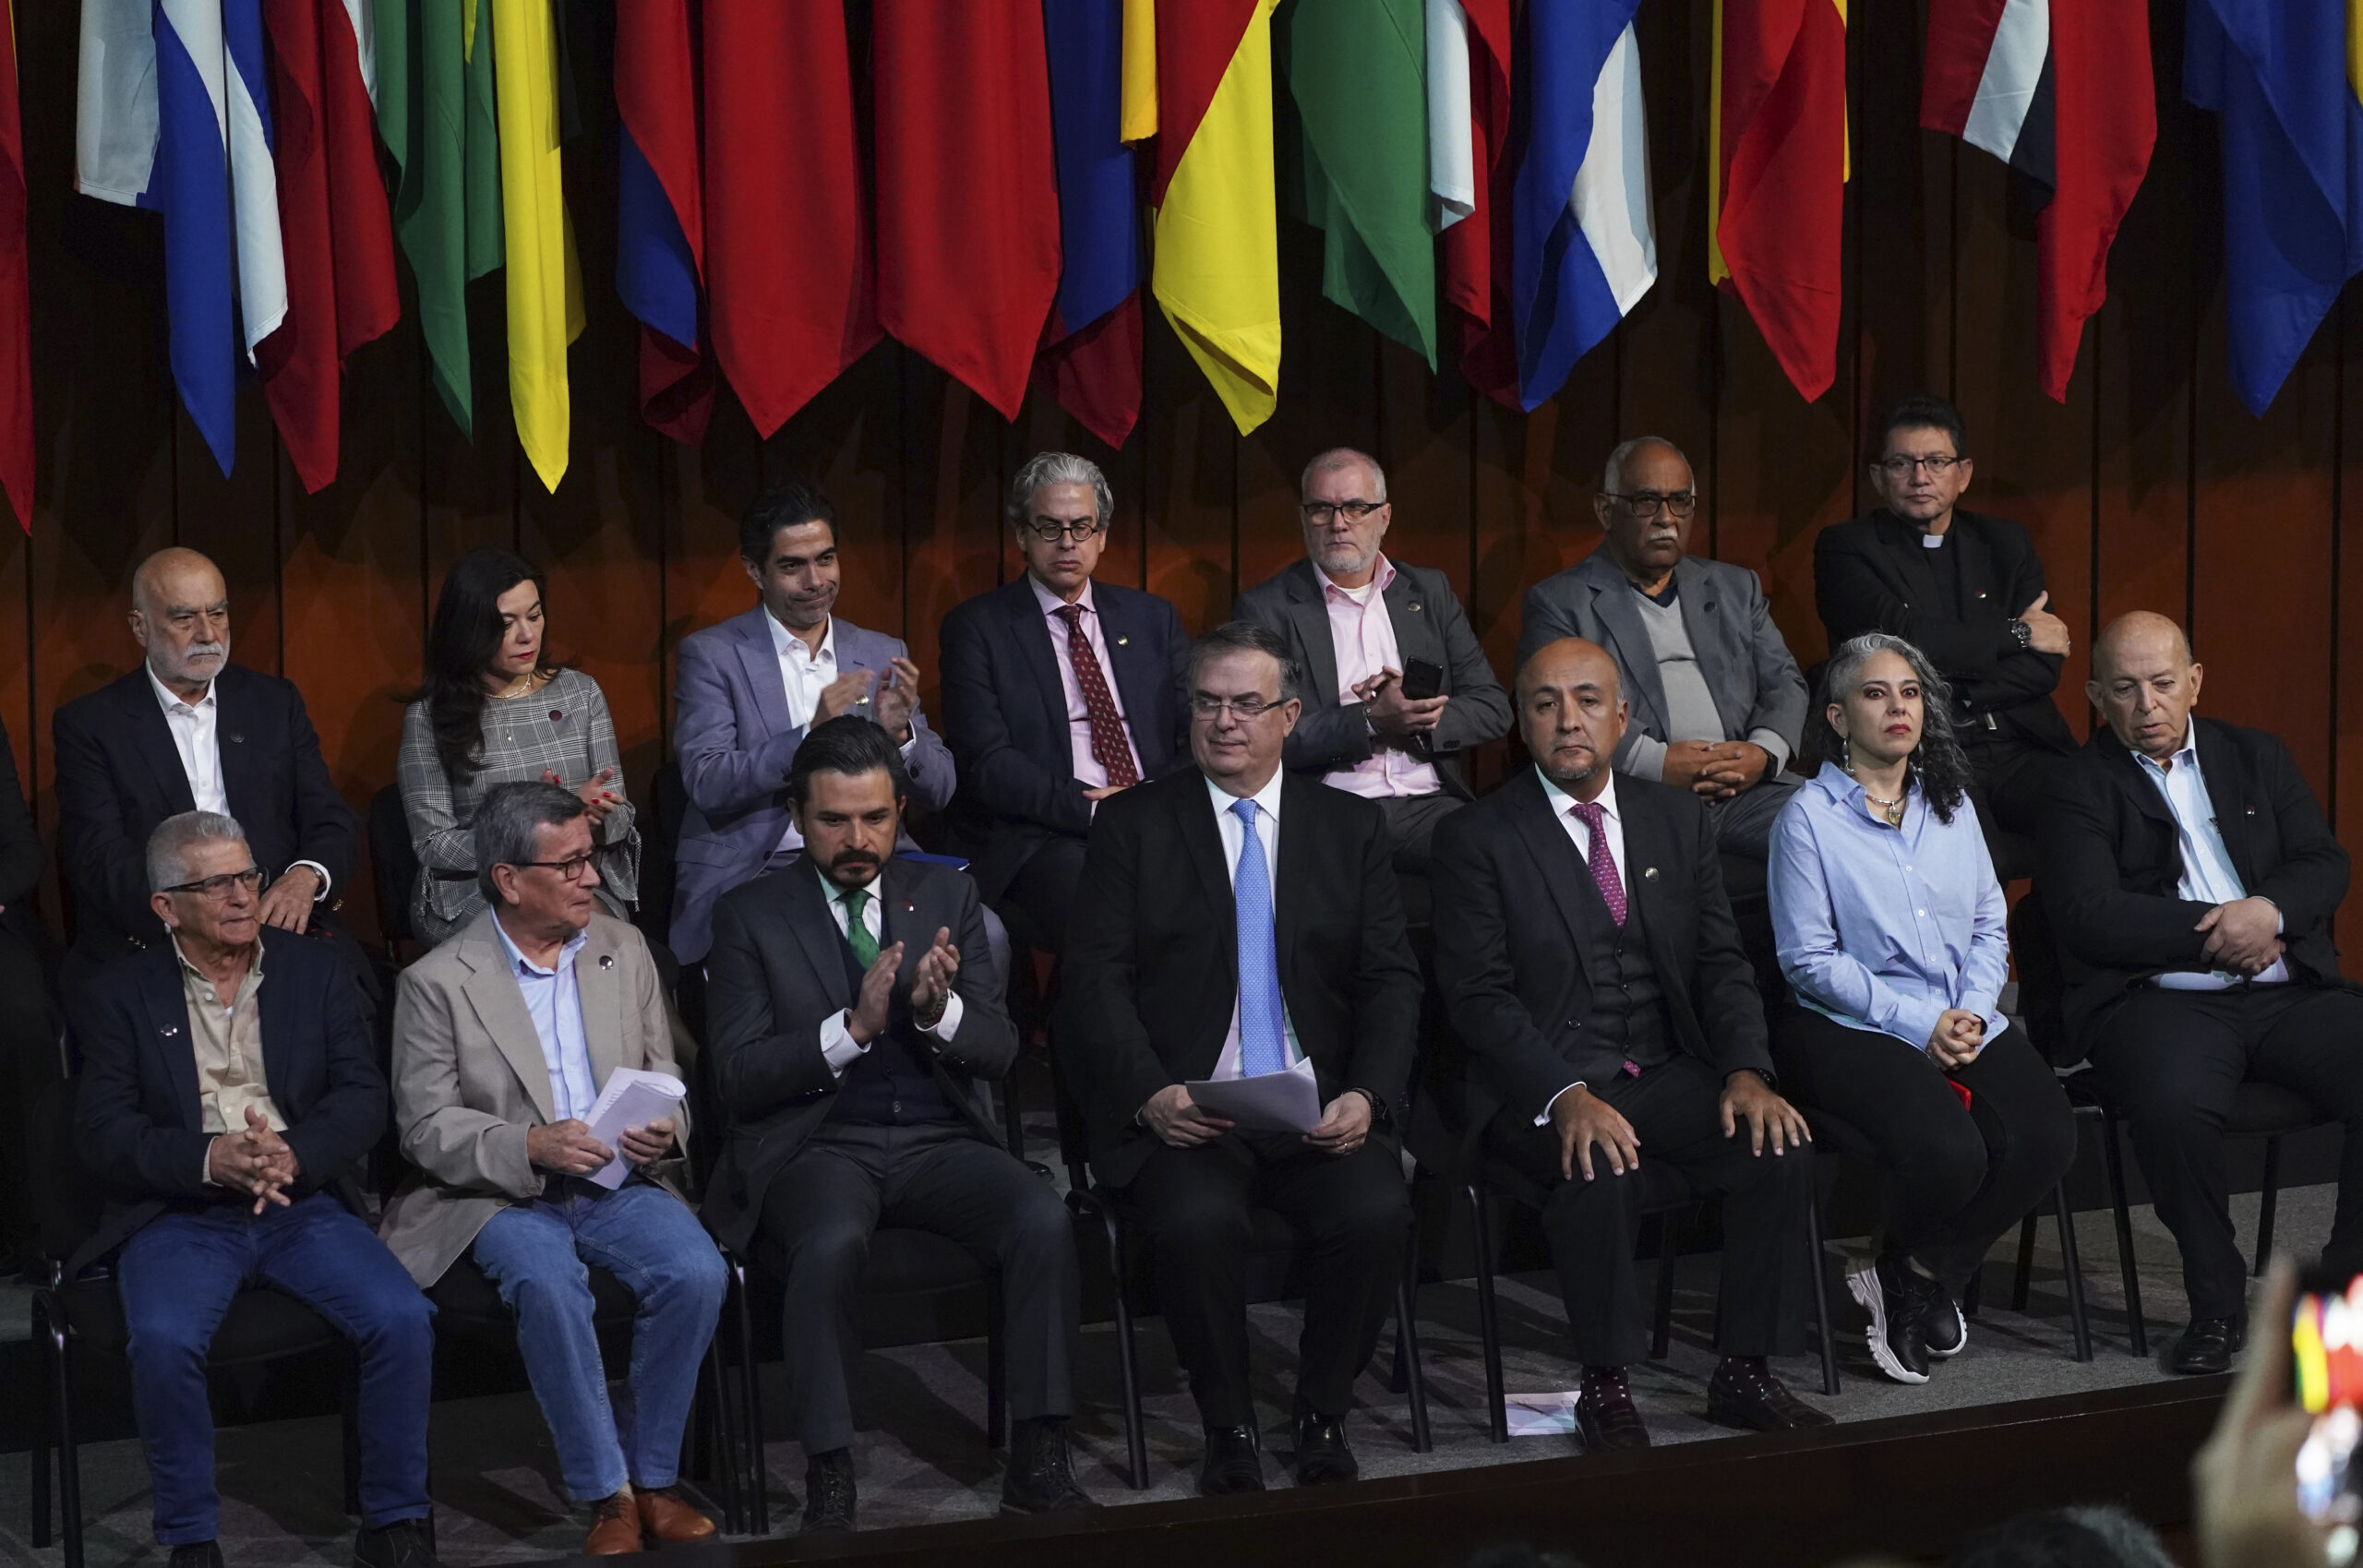 Κολομβία: Την Τρίτη 2 Μαΐου ο νέος κύκλος ειρηνευτικών διαπραγματεύσεων κυβέρνησης και ανταρτών του ELN